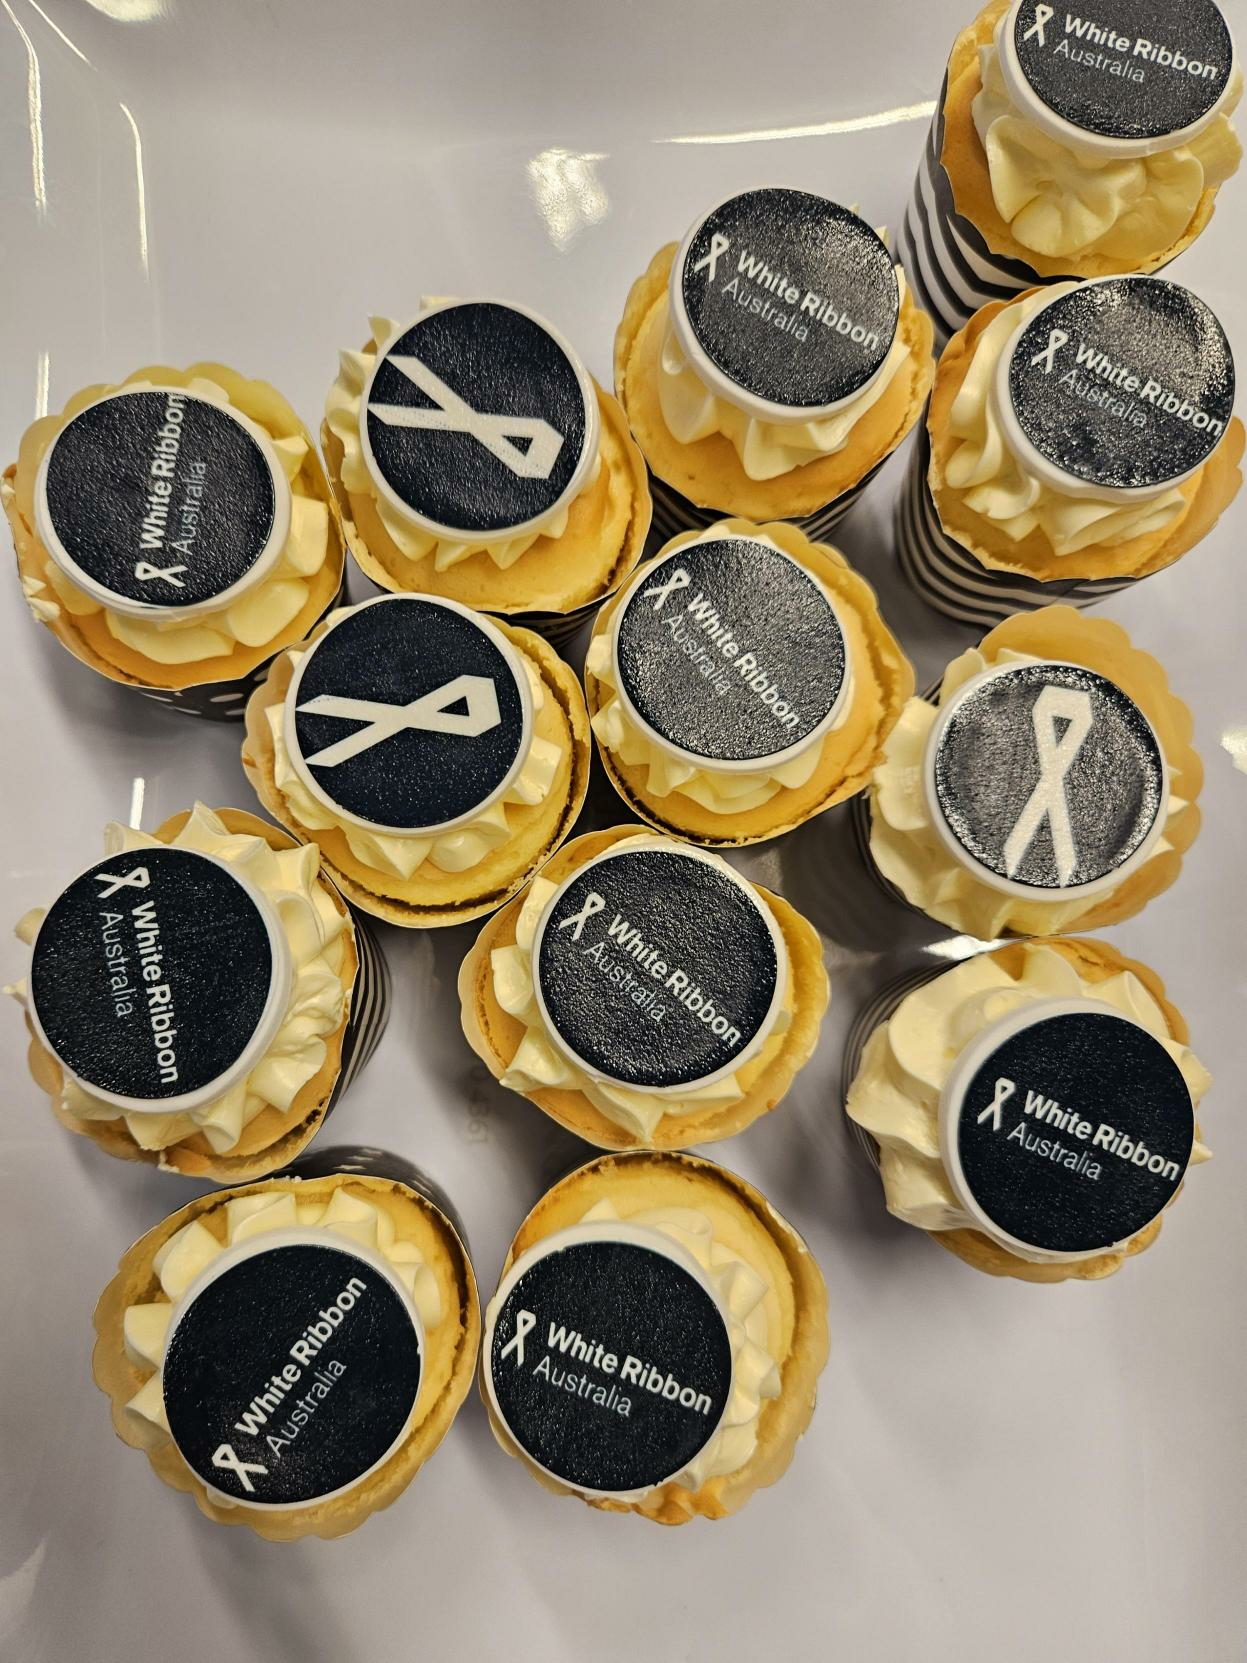 Yellow cupcakes with white ribbon Australia logo on them